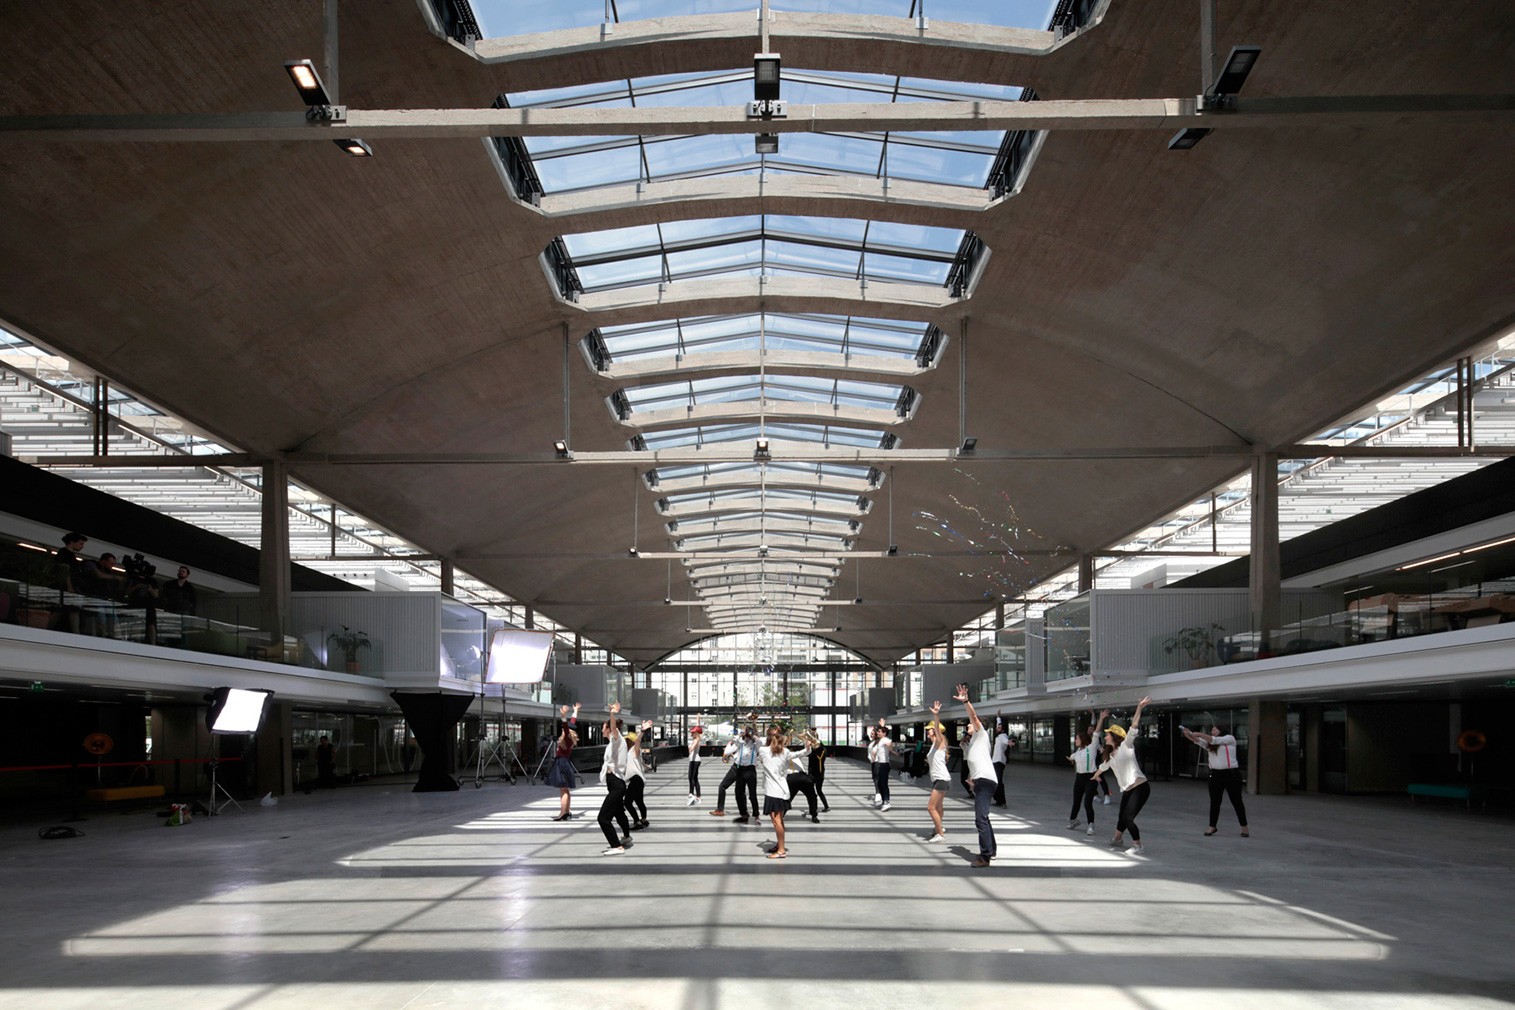 Station F - “Vườn ươm” khởi nghiệp lớn nhất thế giới được xây dựng trên nền của nhà ga xe lửa cũ Halle Freyssinet